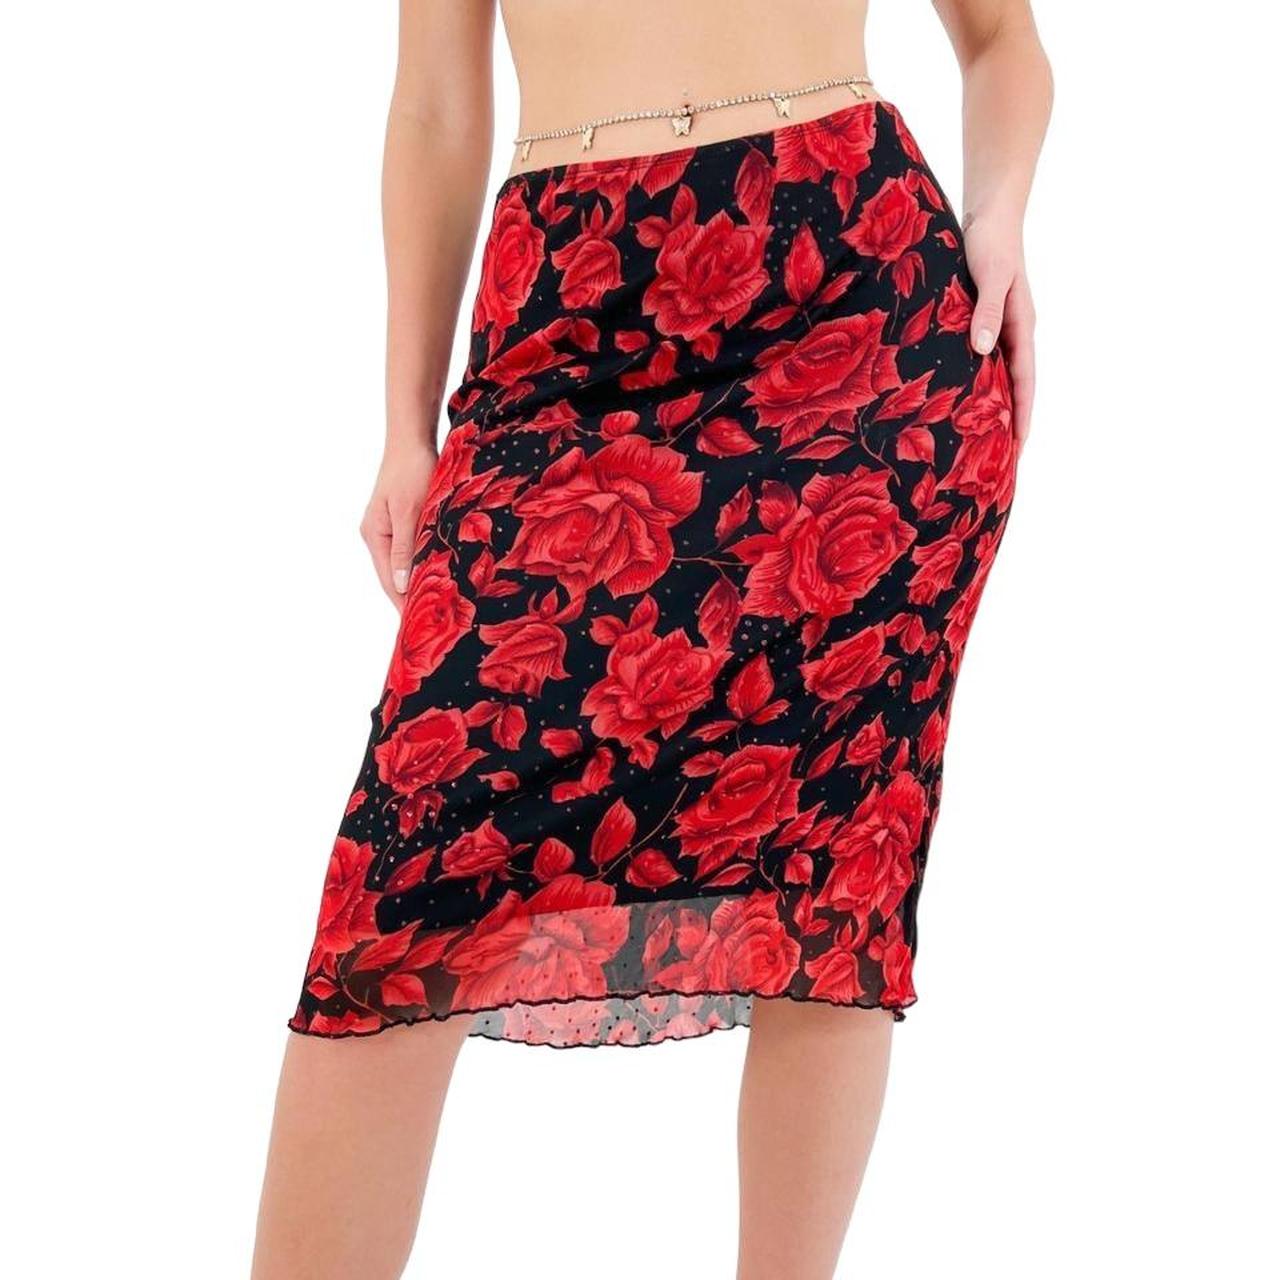 Y2k Vintage Black + Red Rose Floral Print Low-Rise Stretchy Skirt w/ Glitter Details [M]